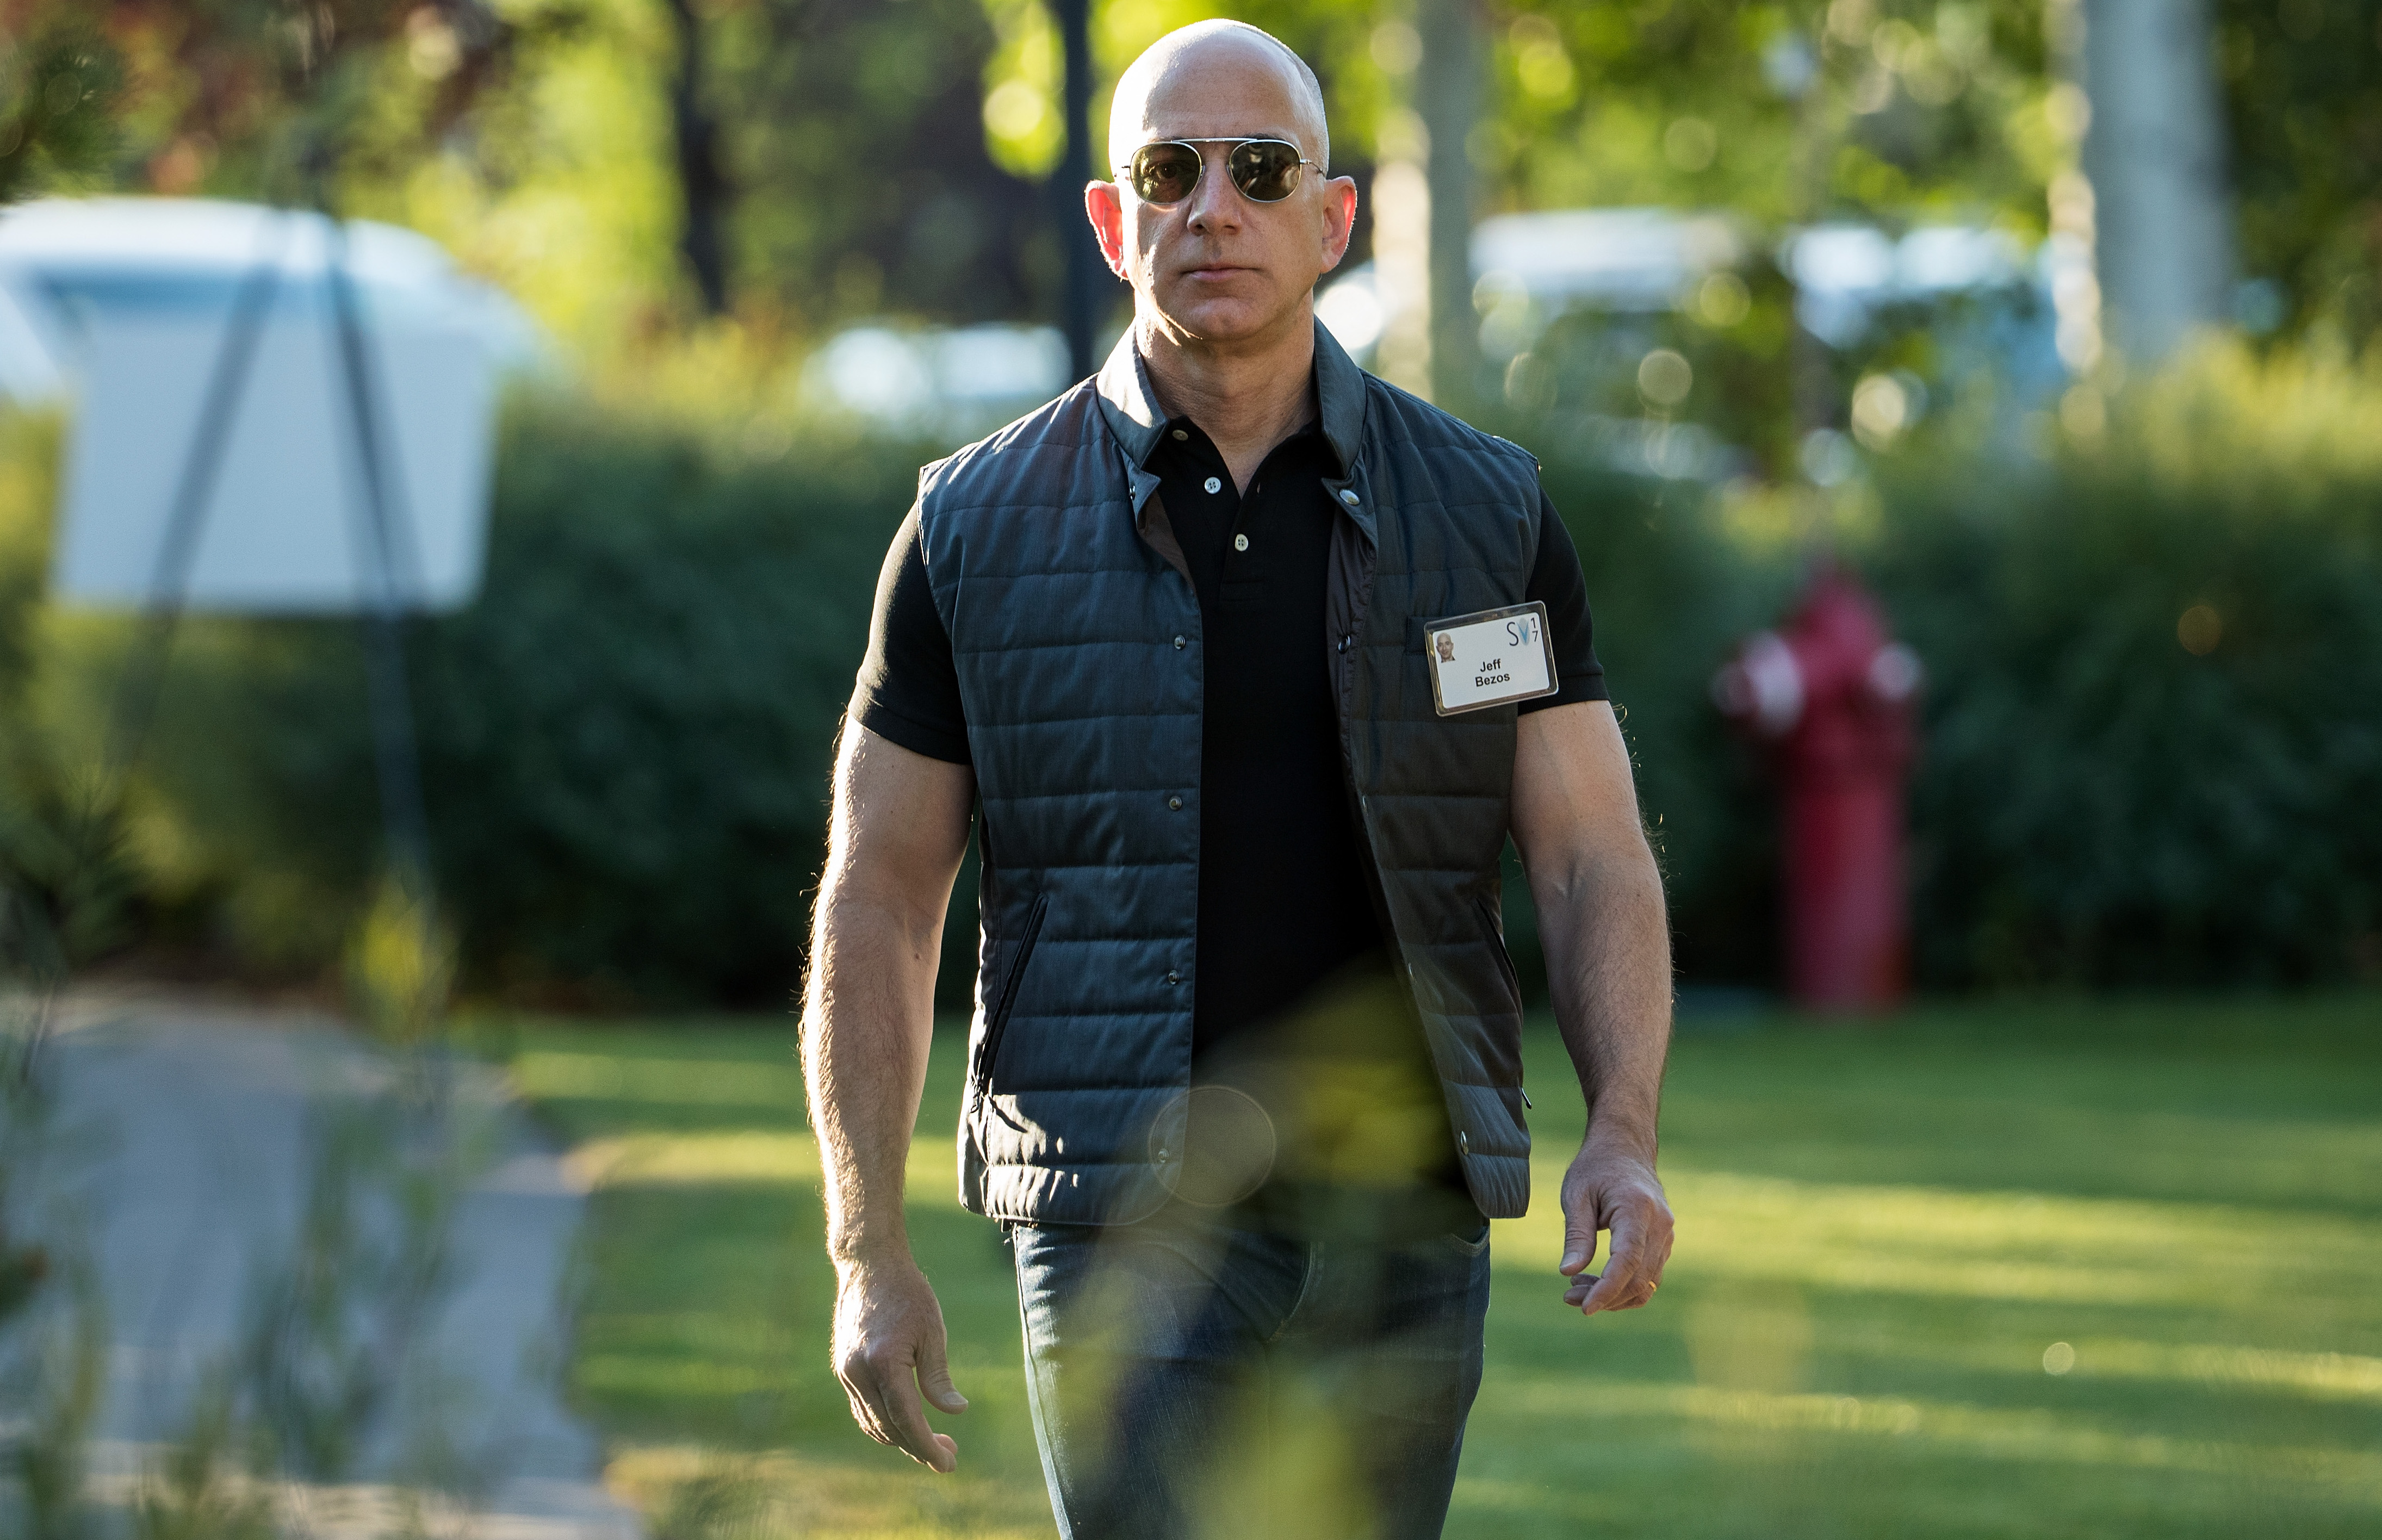 Amazon CEO Jeff Bezos walking toward the camera.